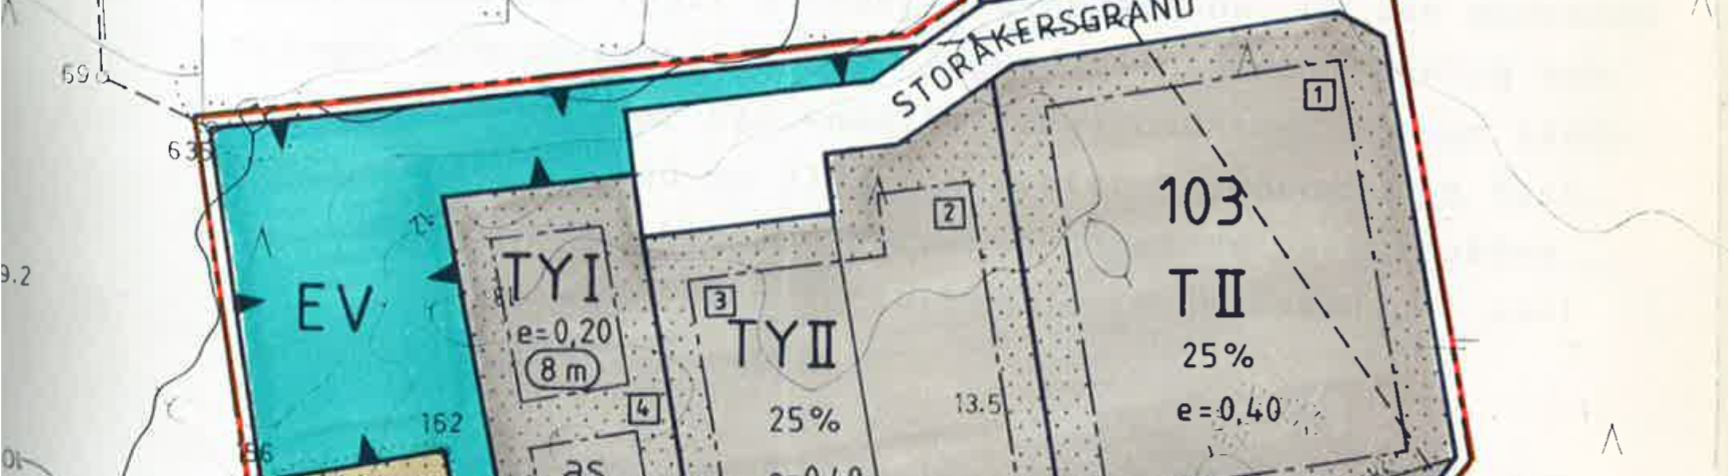 I öster angränsar detaljplanen till detaljplan för Bosund industriområde godkänd 1983. 2.